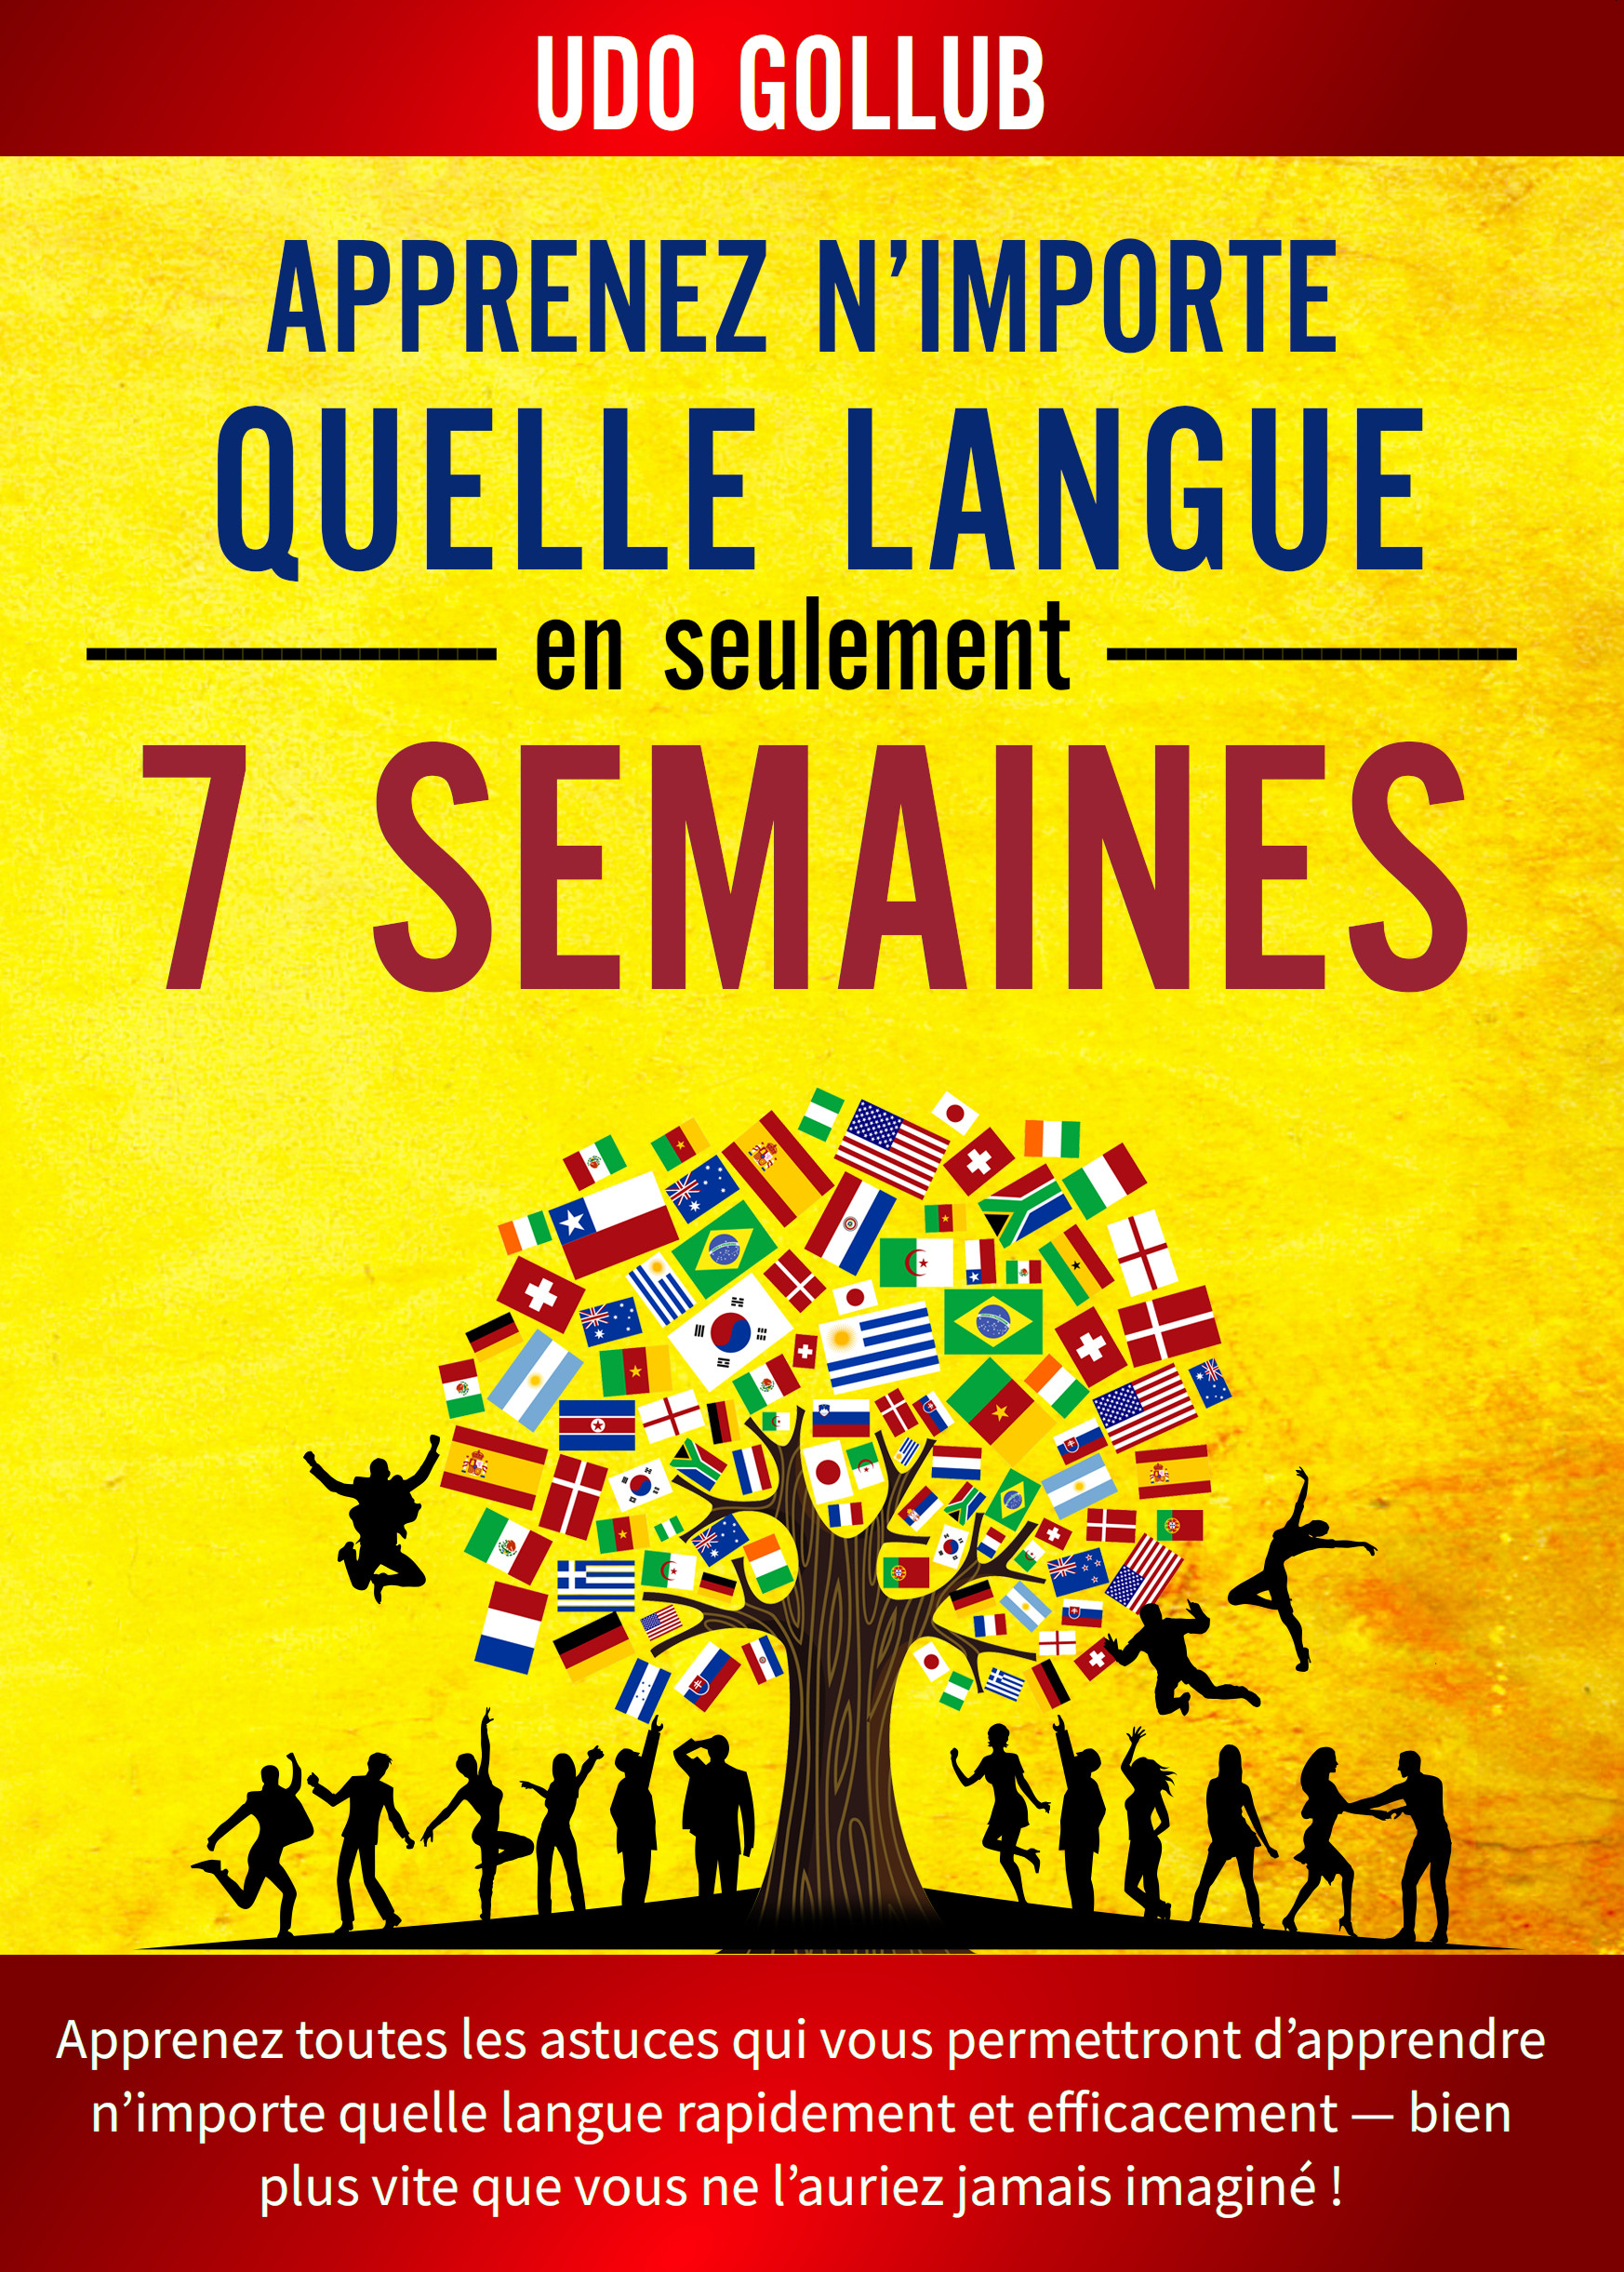 Cover: Apprenez n'importe quelle langue en seulement 7 semaines